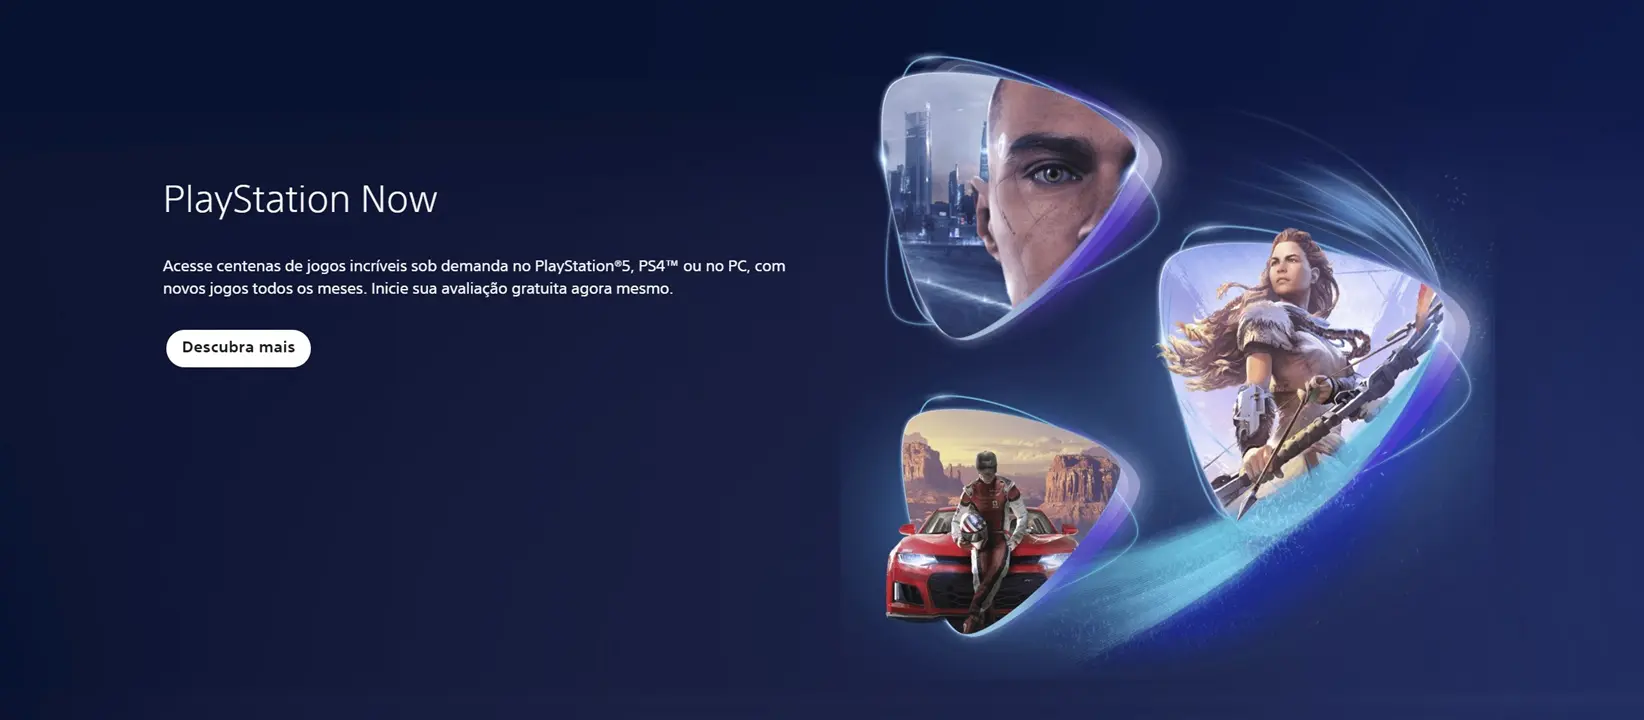 Logo da PlayStation Now em azul com vários ícones de jogos da casa.